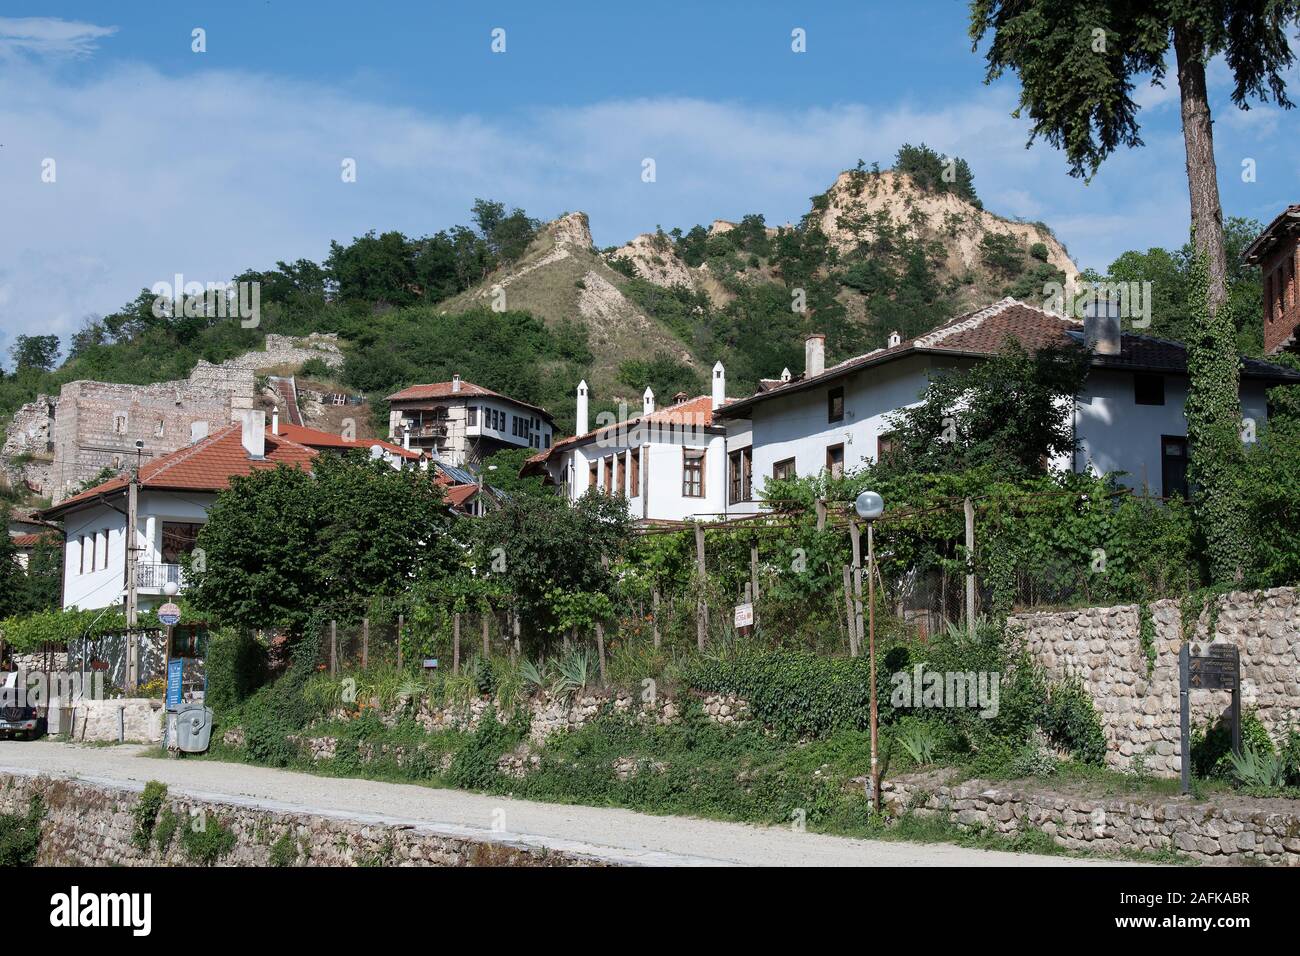 La Bulgaria, Melnik, case, payramids di sabbia e roccia la formazione attorno al villaggio rurale Foto Stock